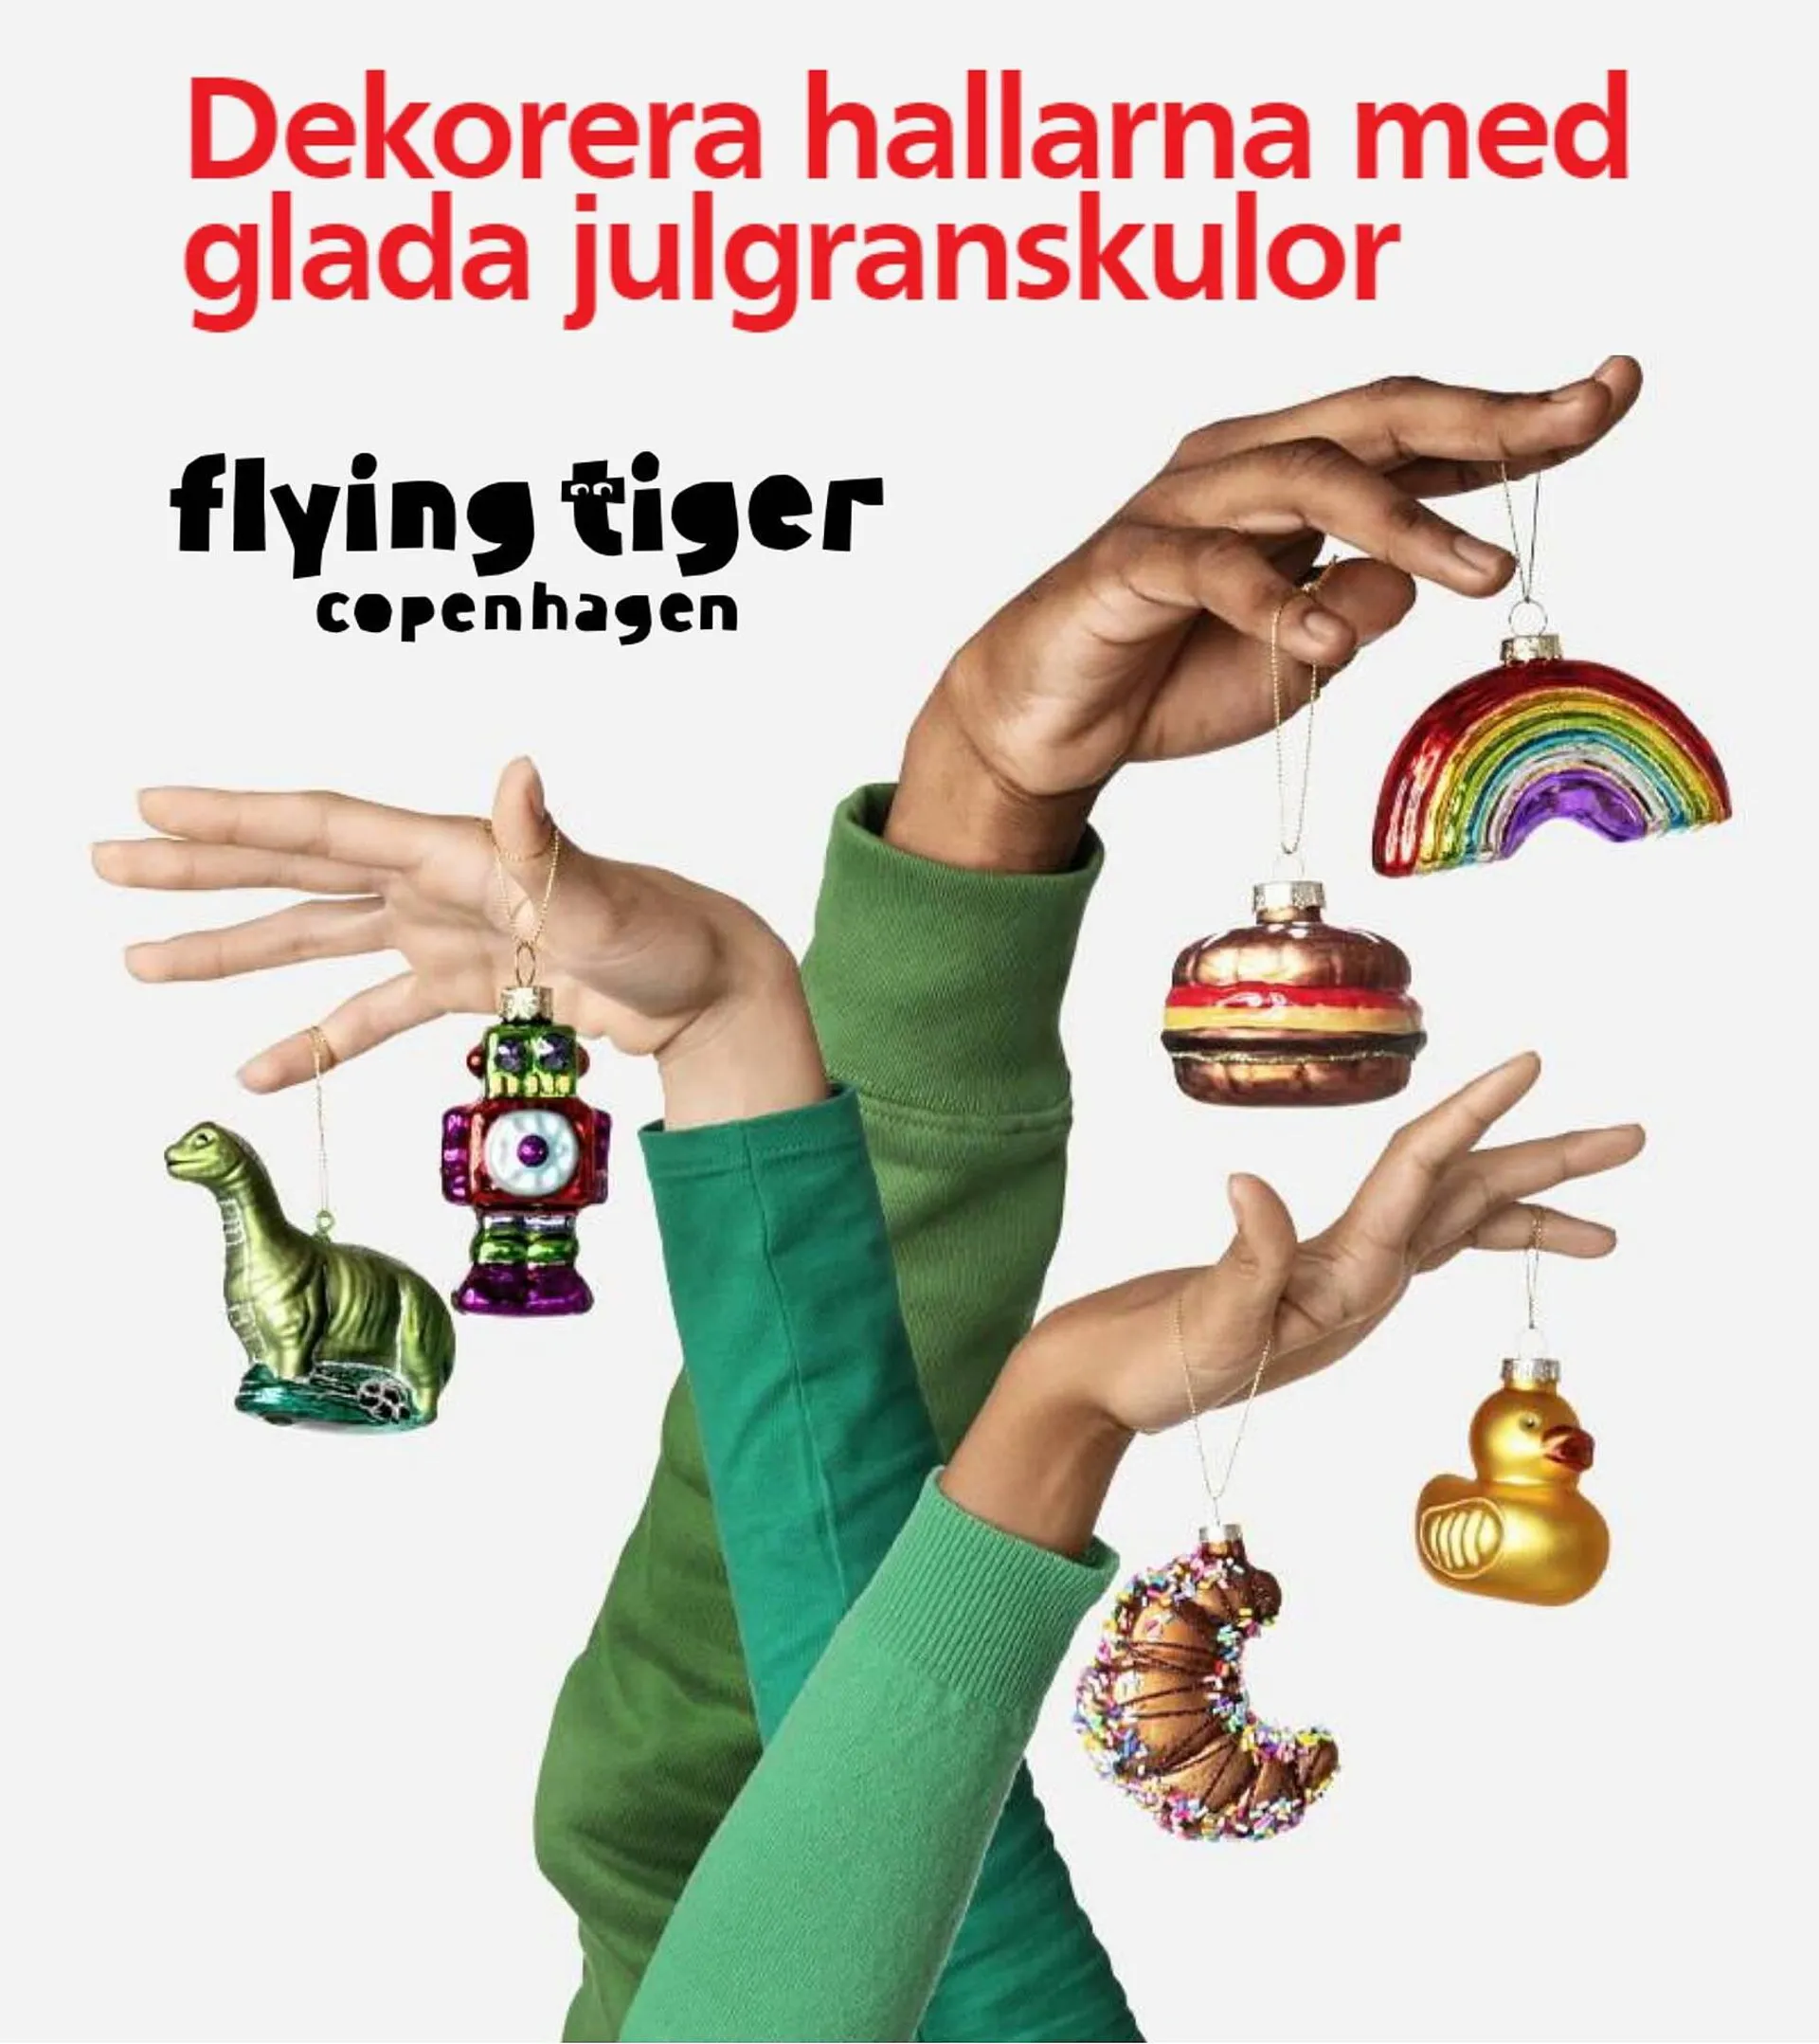 Flying Tiger reklamblad - 1